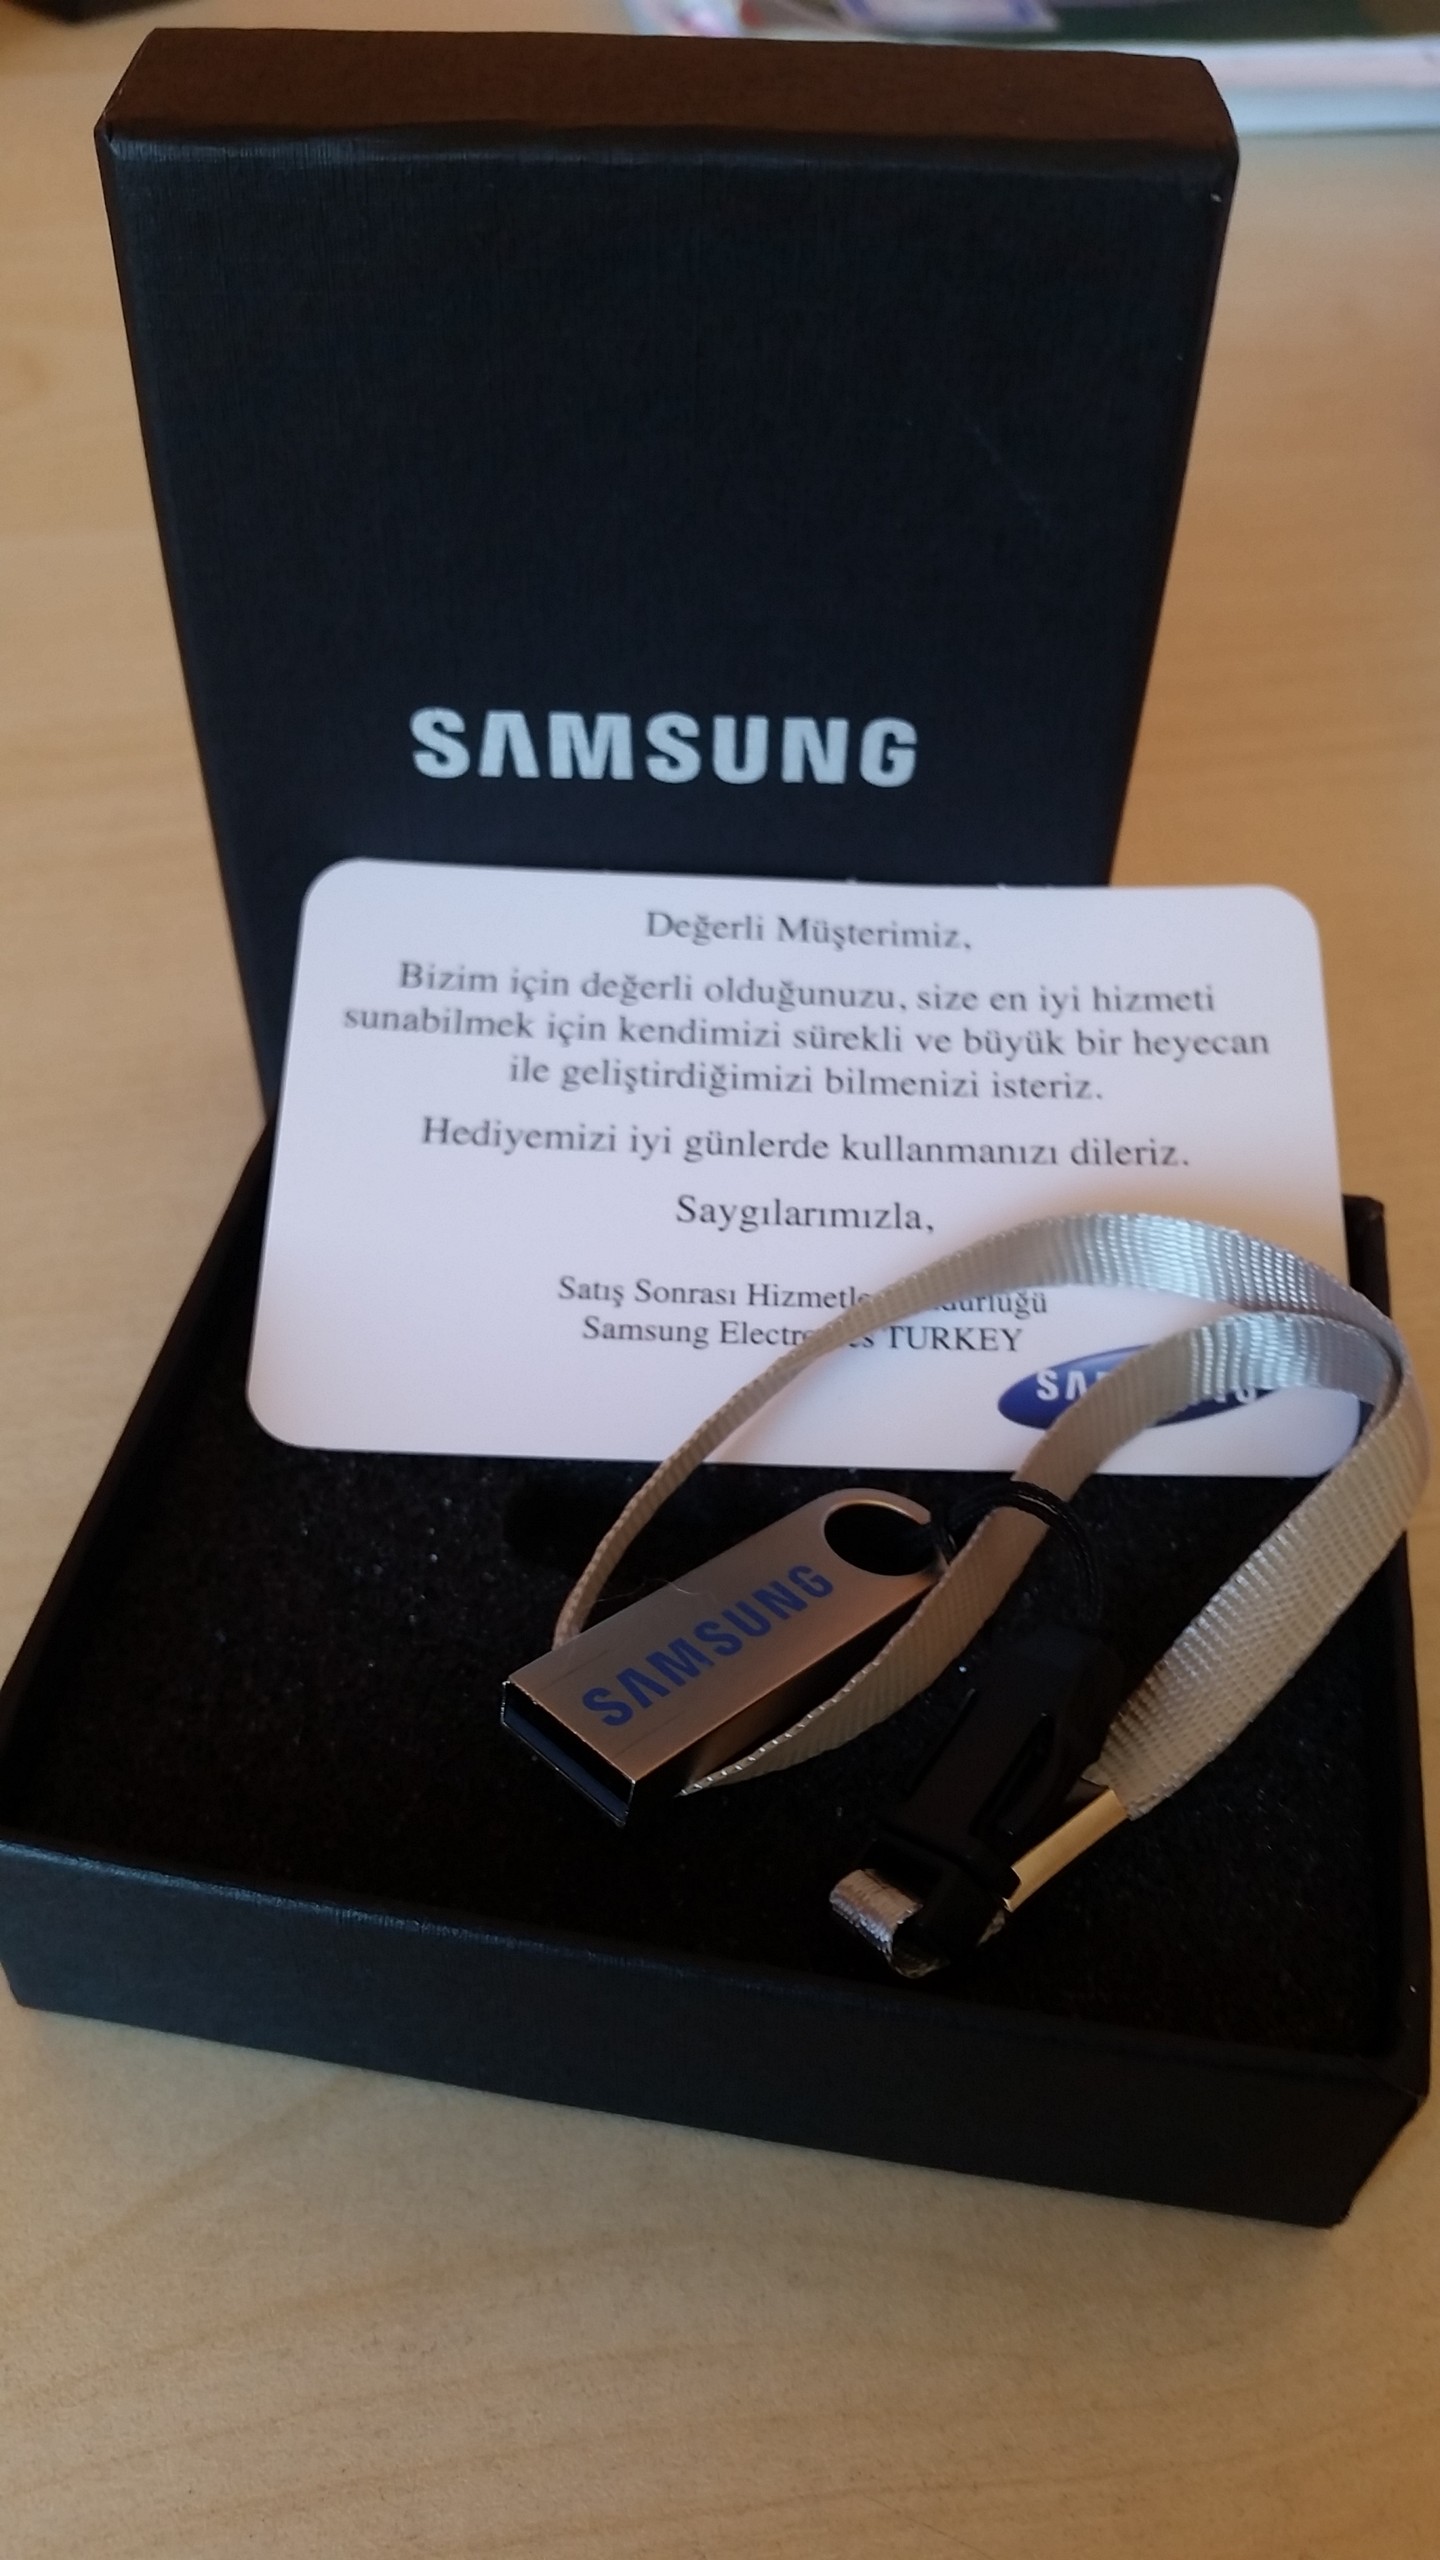  Samsungun yolladığı hediye